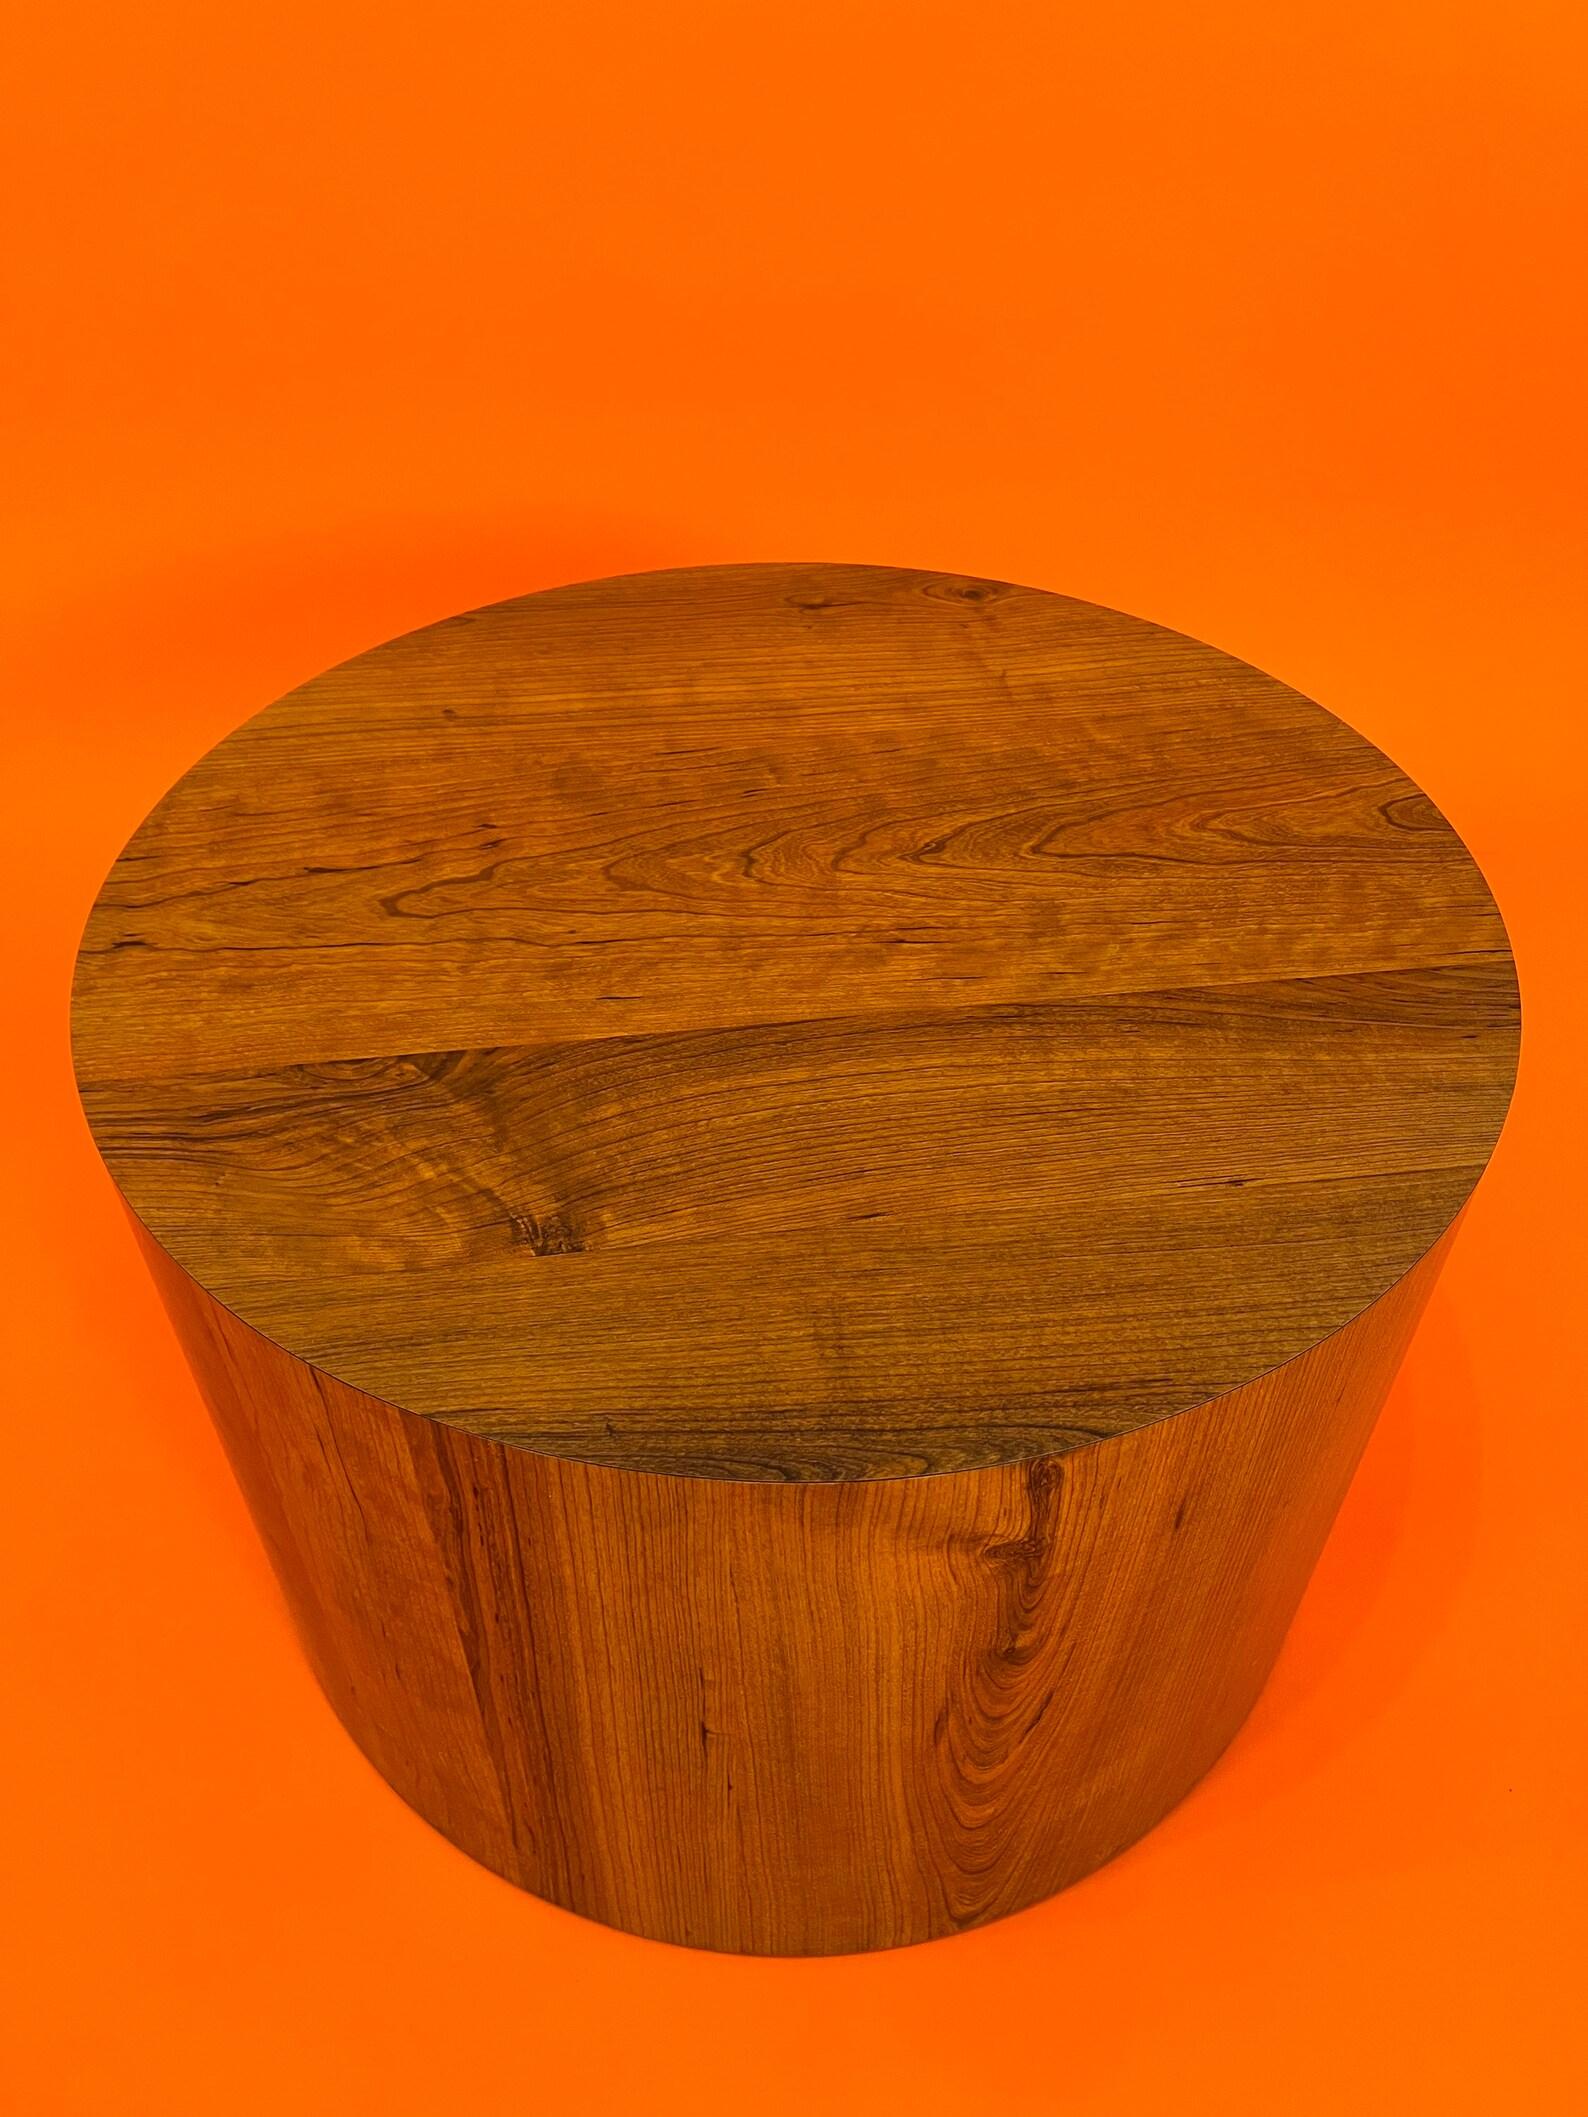 Mid-Century teak circle drum shaped coffee table end table 1970 Circa
Dimensions : diamètre 23,5 pouces 
Hauteur : 15,5 pouces 
Très bon état robuste et lourd
Le verre en forme de coeur et la chaise ne sont pas destinés à des fins de mise en scène